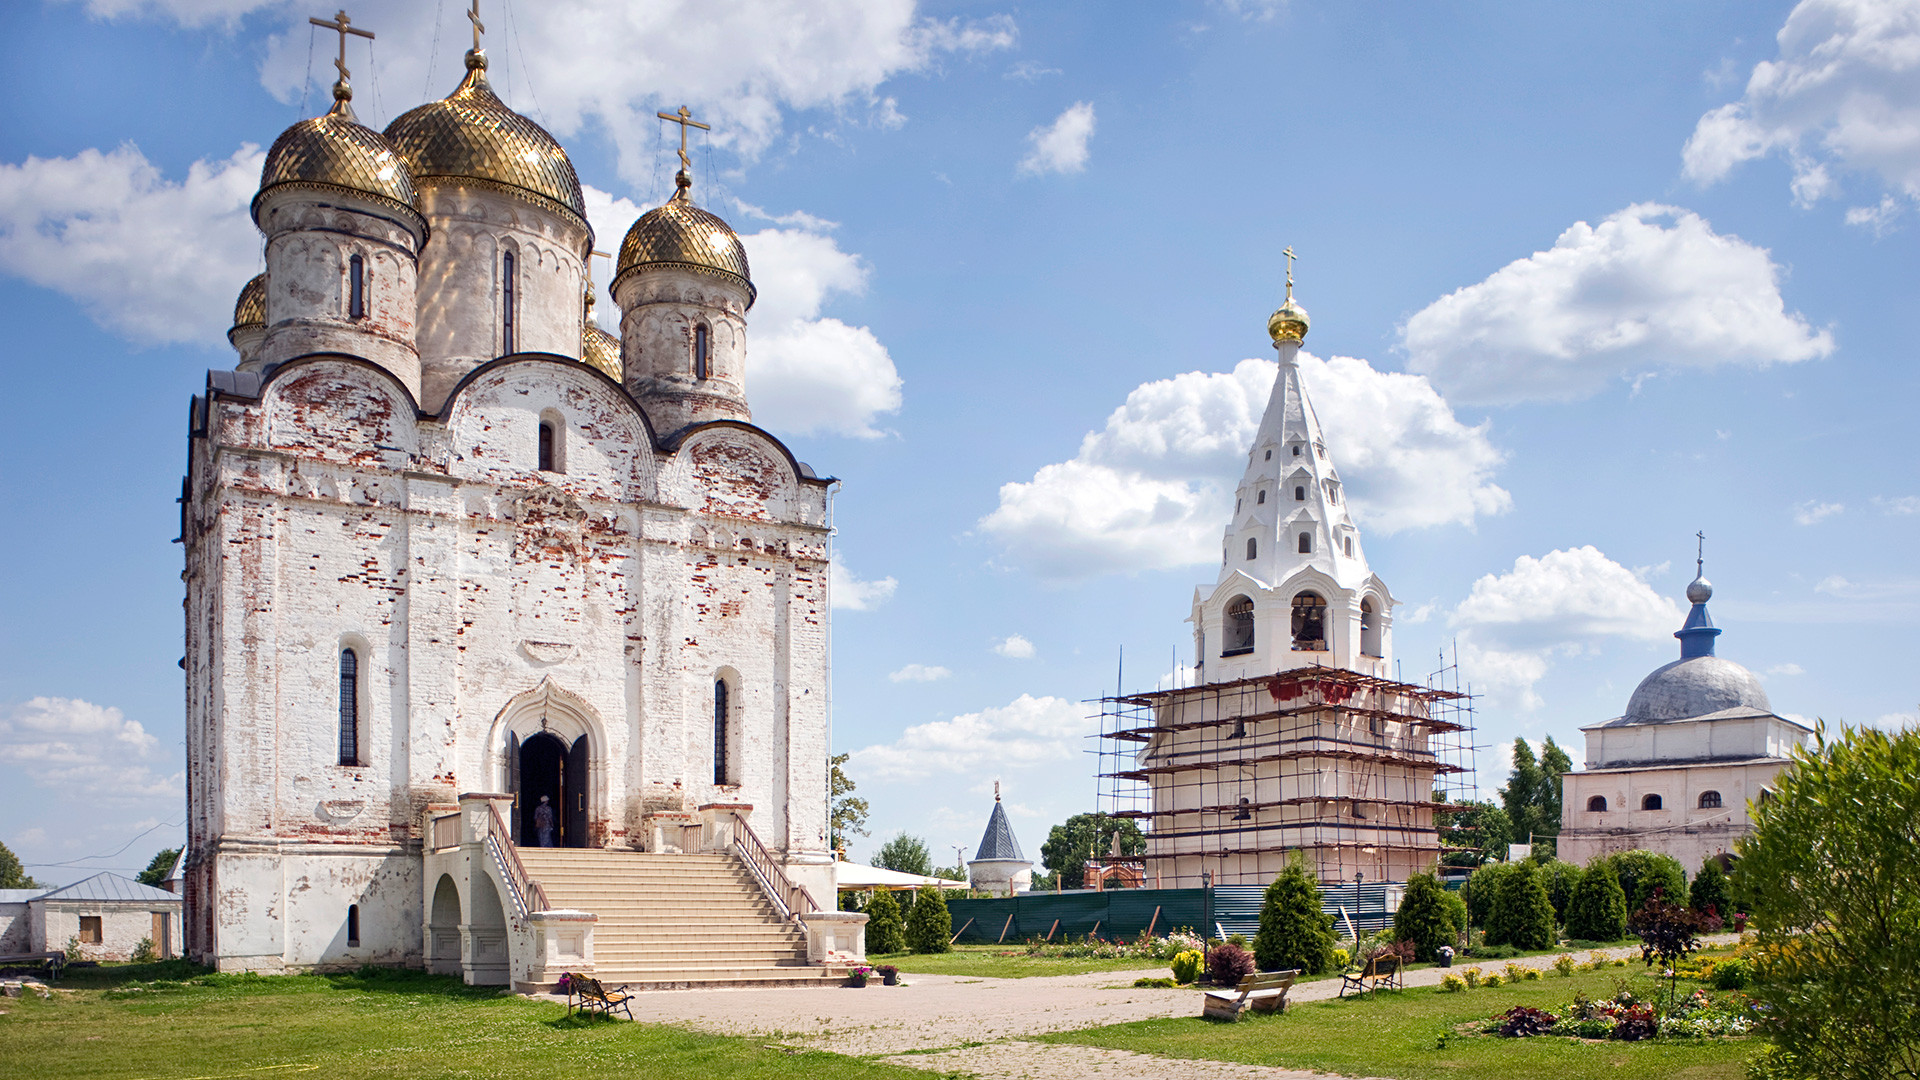 Mozhajsk. Monastero Luzhetskij della Natività della Vergine di San Teraponte, vista nord-ovest. Da sinistra: Cattedrale della Natività, campanile, Chiesa della Trasfigurazione sulle Porte Sacre. Fotografia: 5 luglio 2015